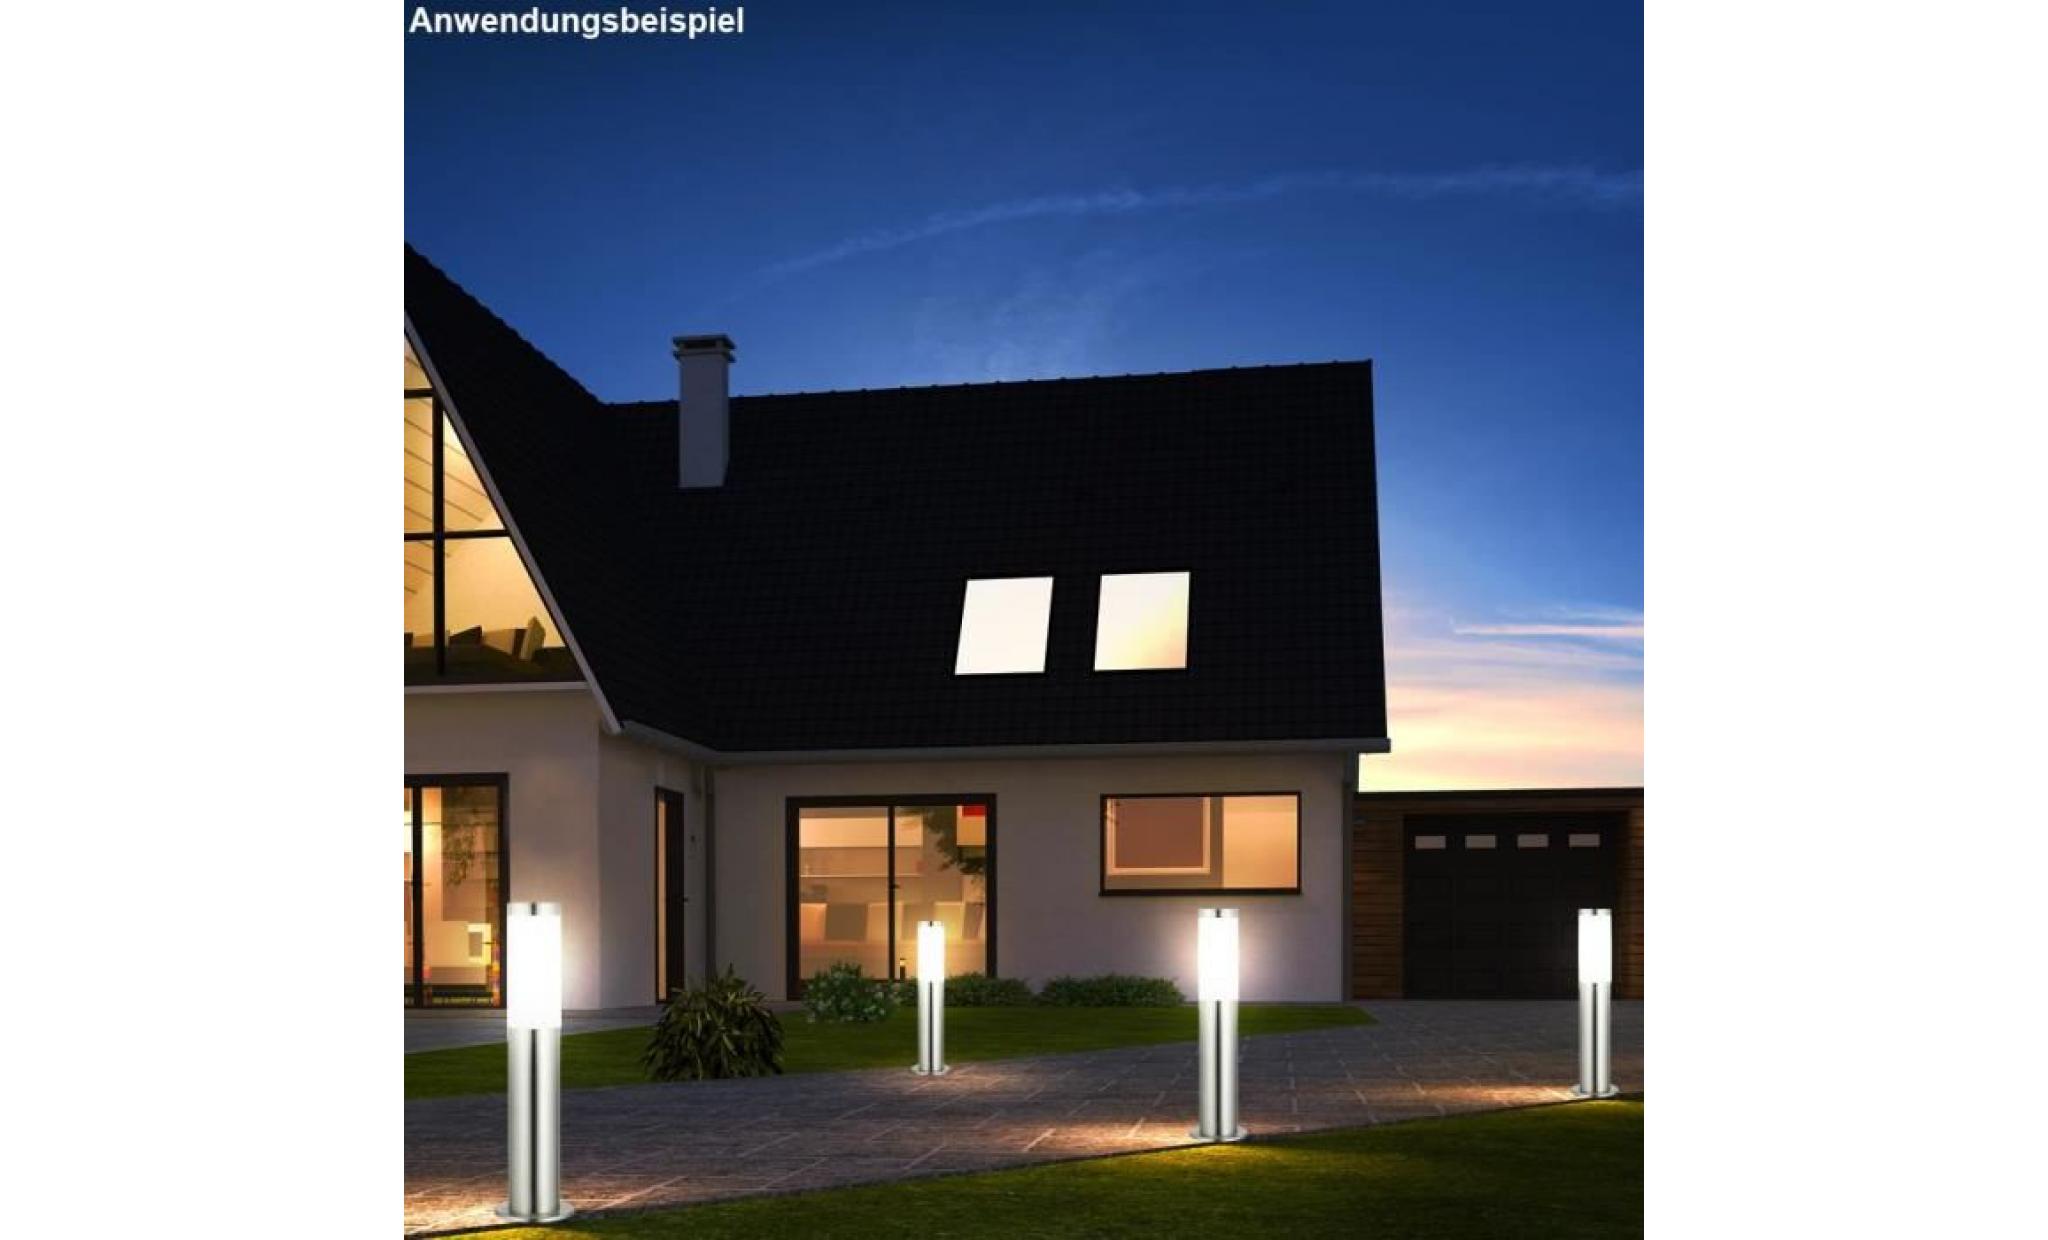 4 x lampadaire acier inoxydable led rvb luminaire sur pied espace extérieur lampe del jardin pas cher